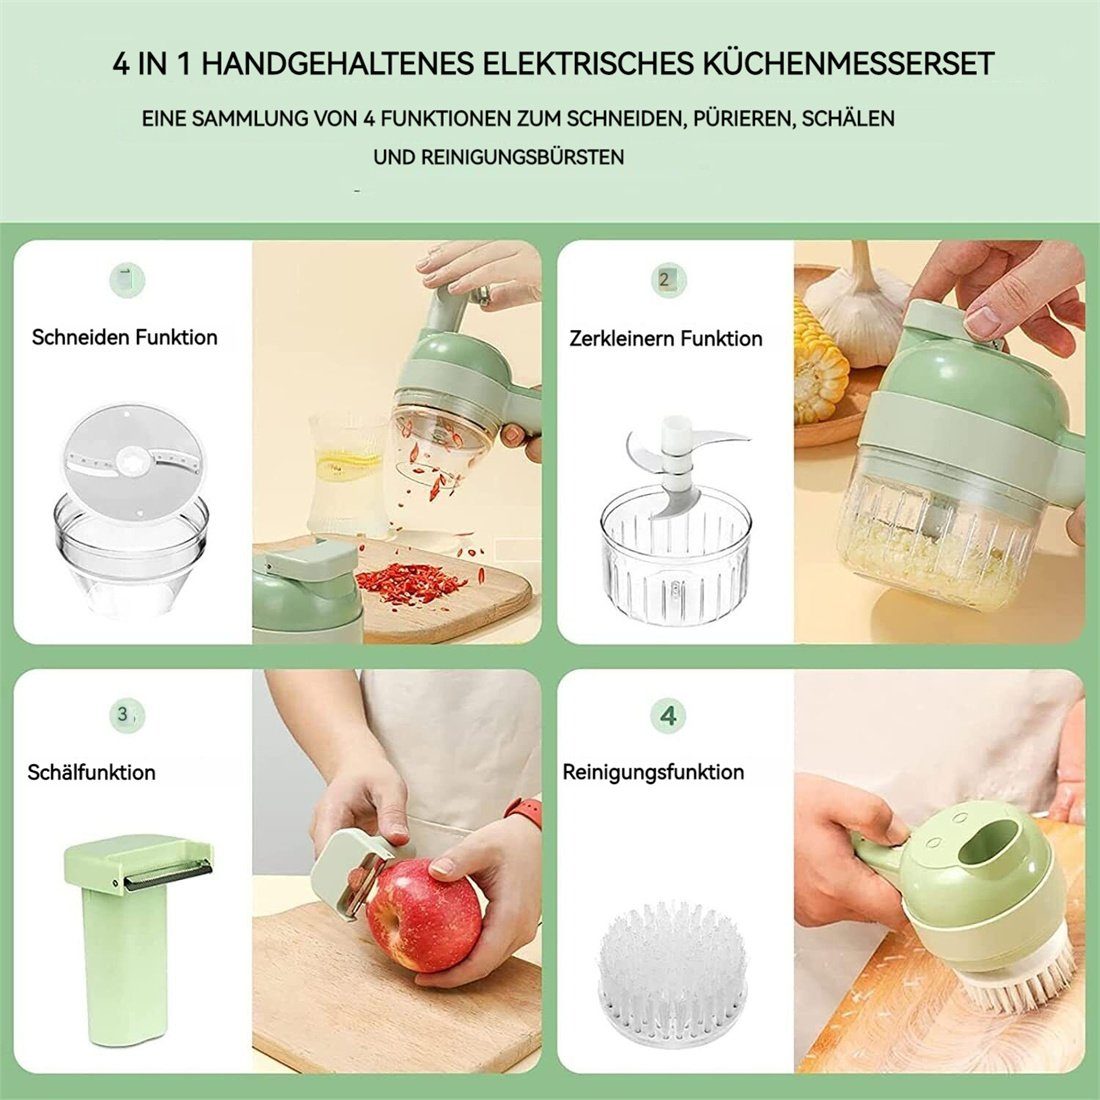 Hand DÖRÖY In Knoblauchpresse Set Tragbarer Gemüseschneider Küchenmaschine Elektrischer 4 1